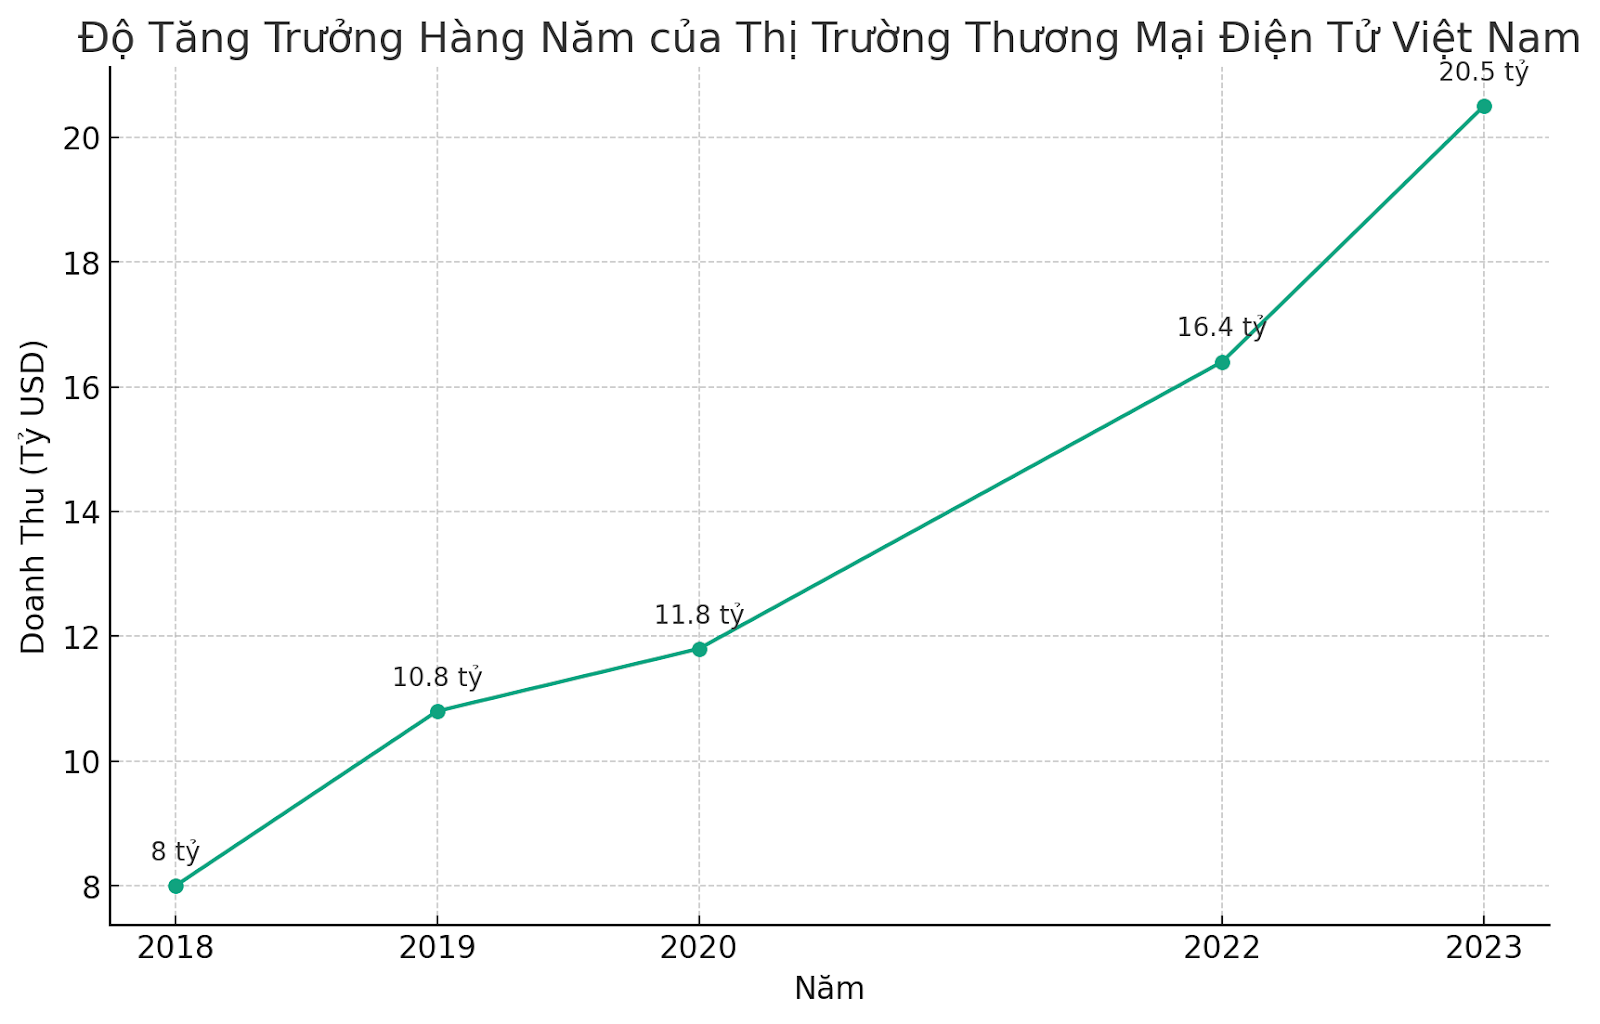 Vốn hoá thị trường của ngành thương mại điện tử Việt Nam